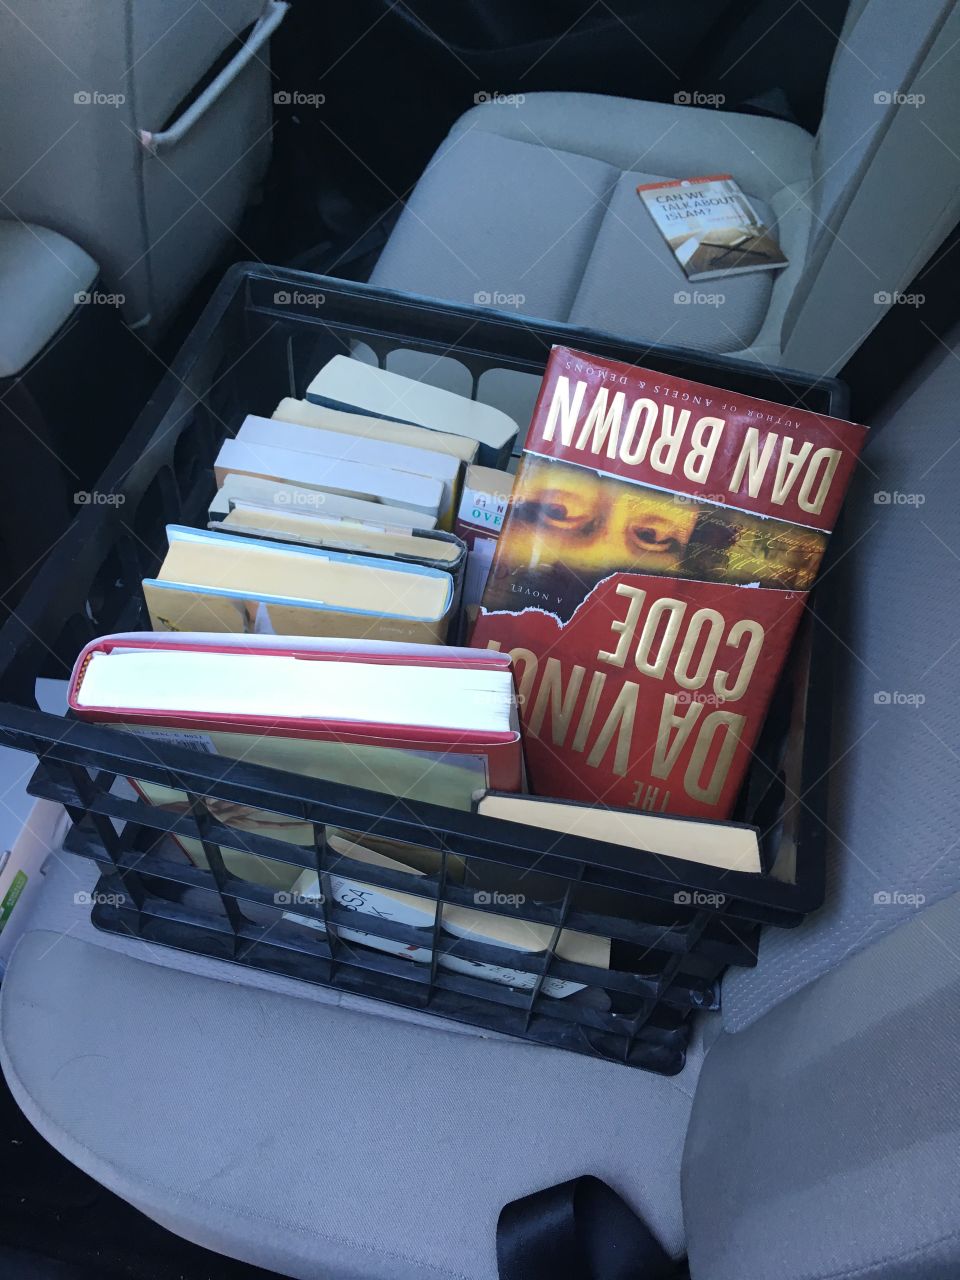 Books in a Box. Da Vinci Code by Dan Brown is shown upside down. The box is in a car. 